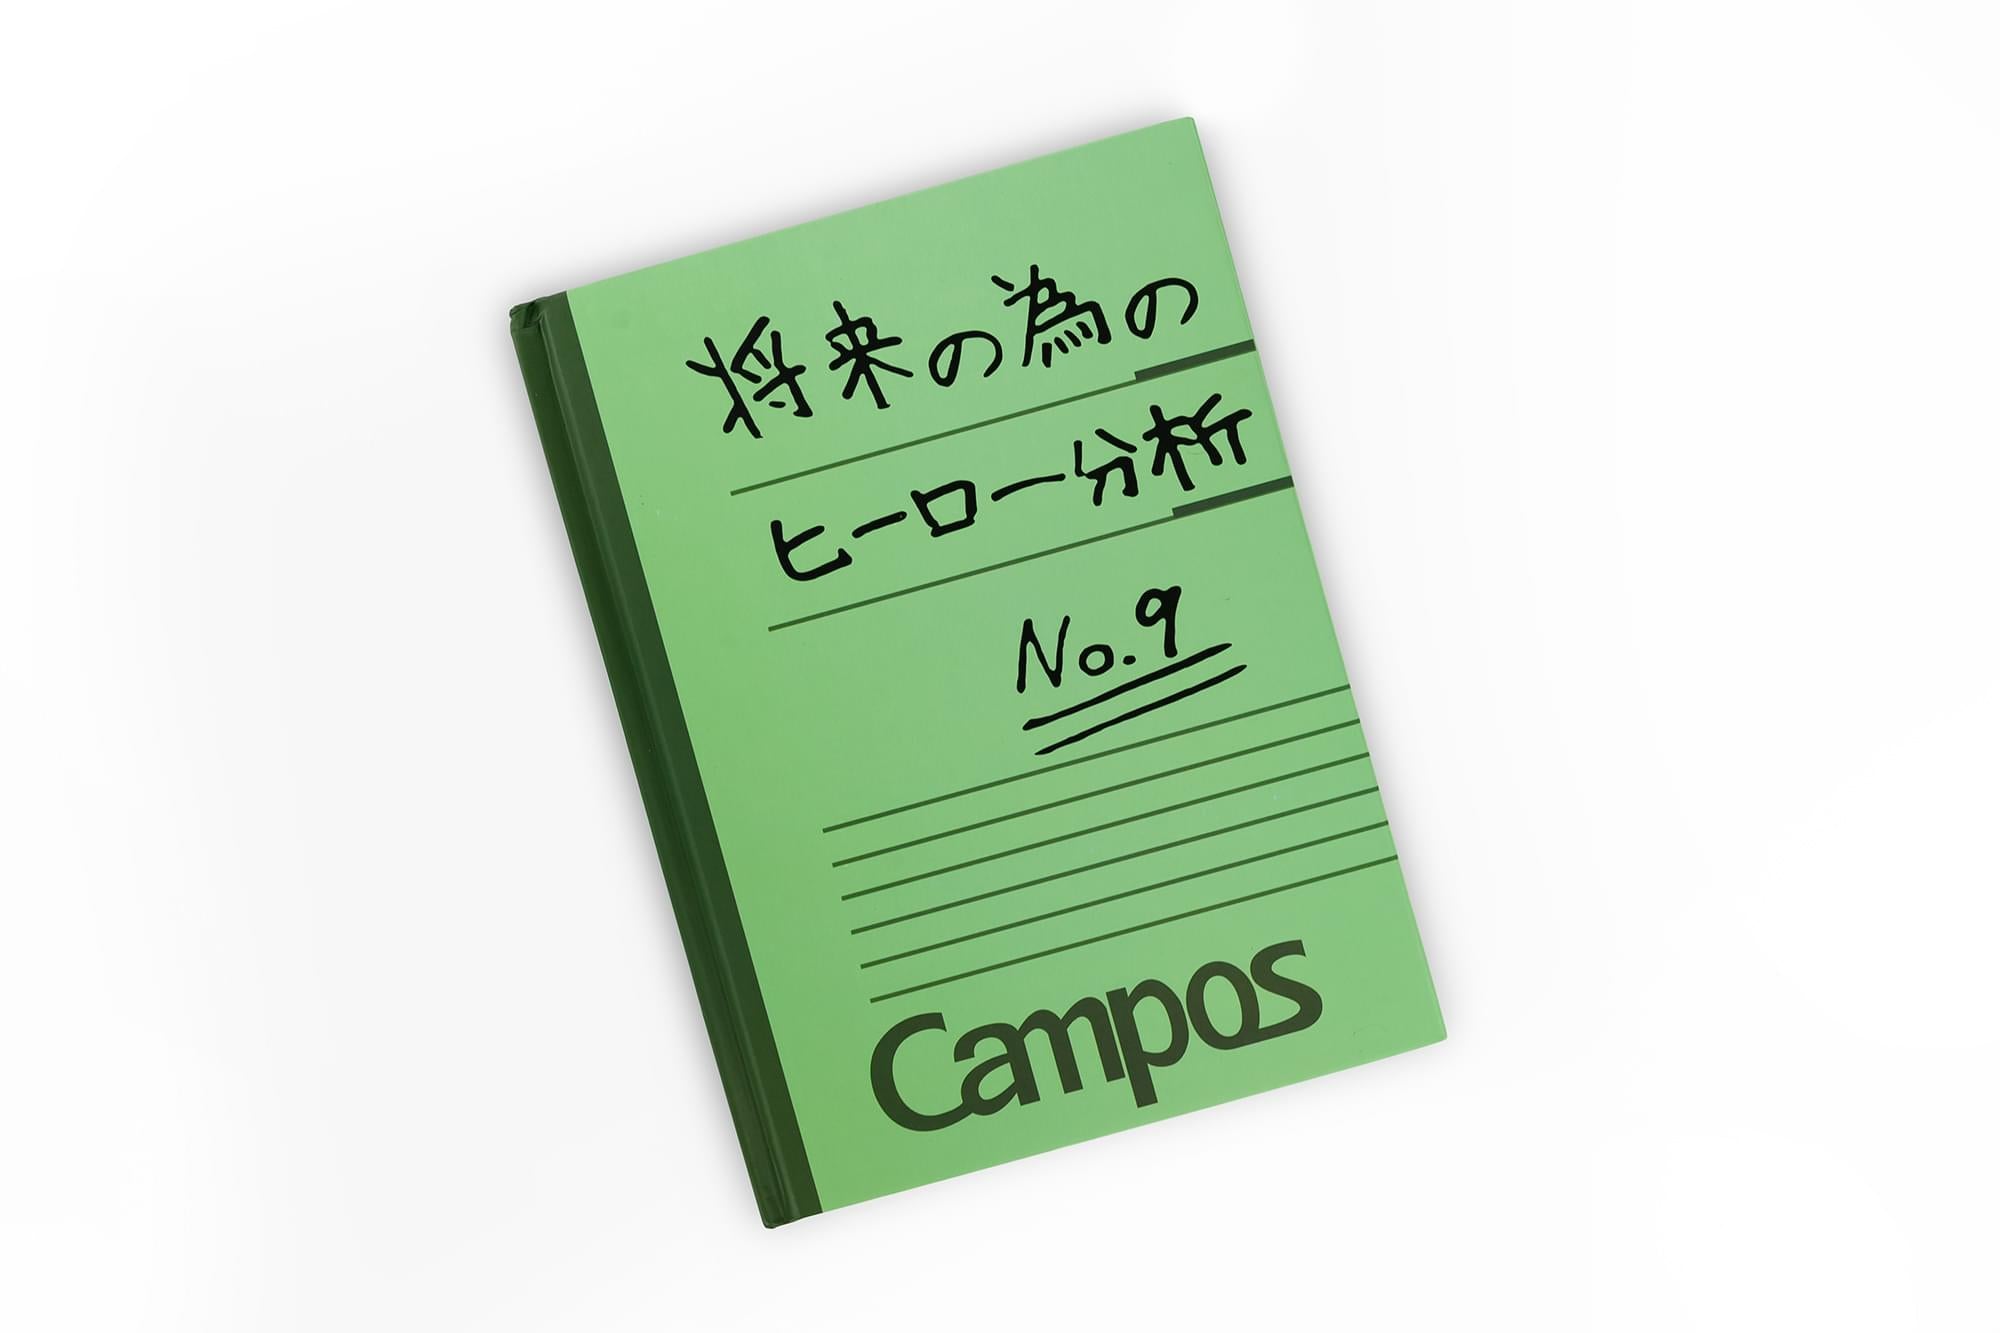 My Hero Academia Notebook Number 9 , Izuku Midoriya Notebook , 8 X 6 Inches